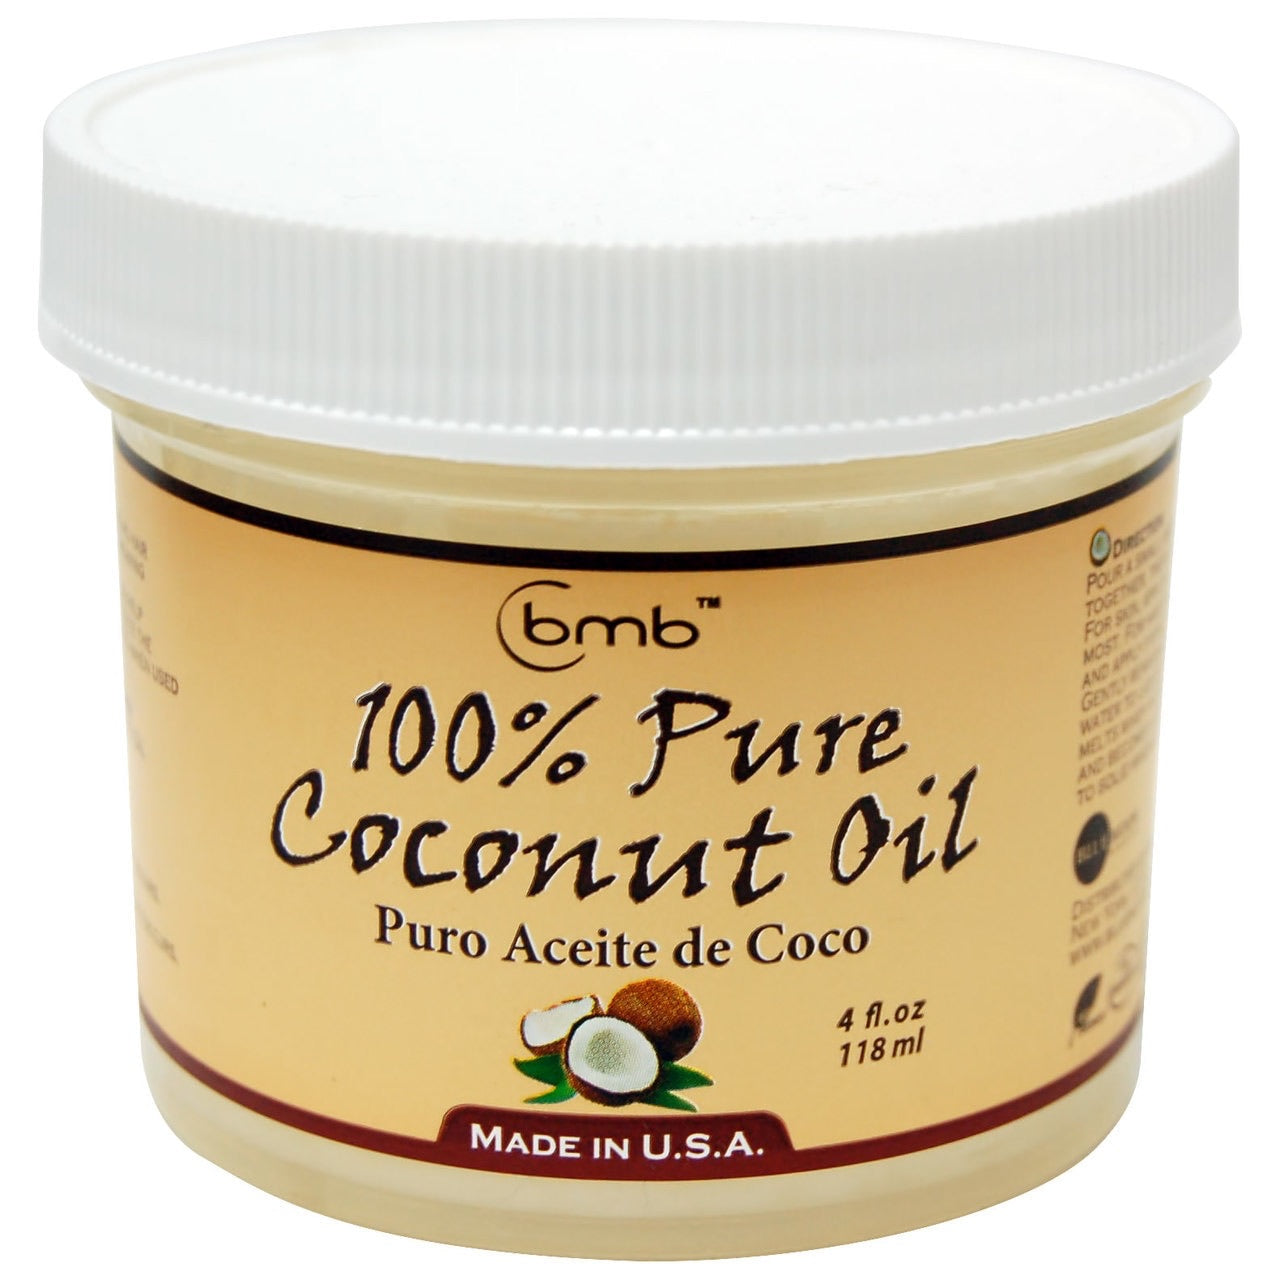 Bmb 100% pure coconut oil 118ml